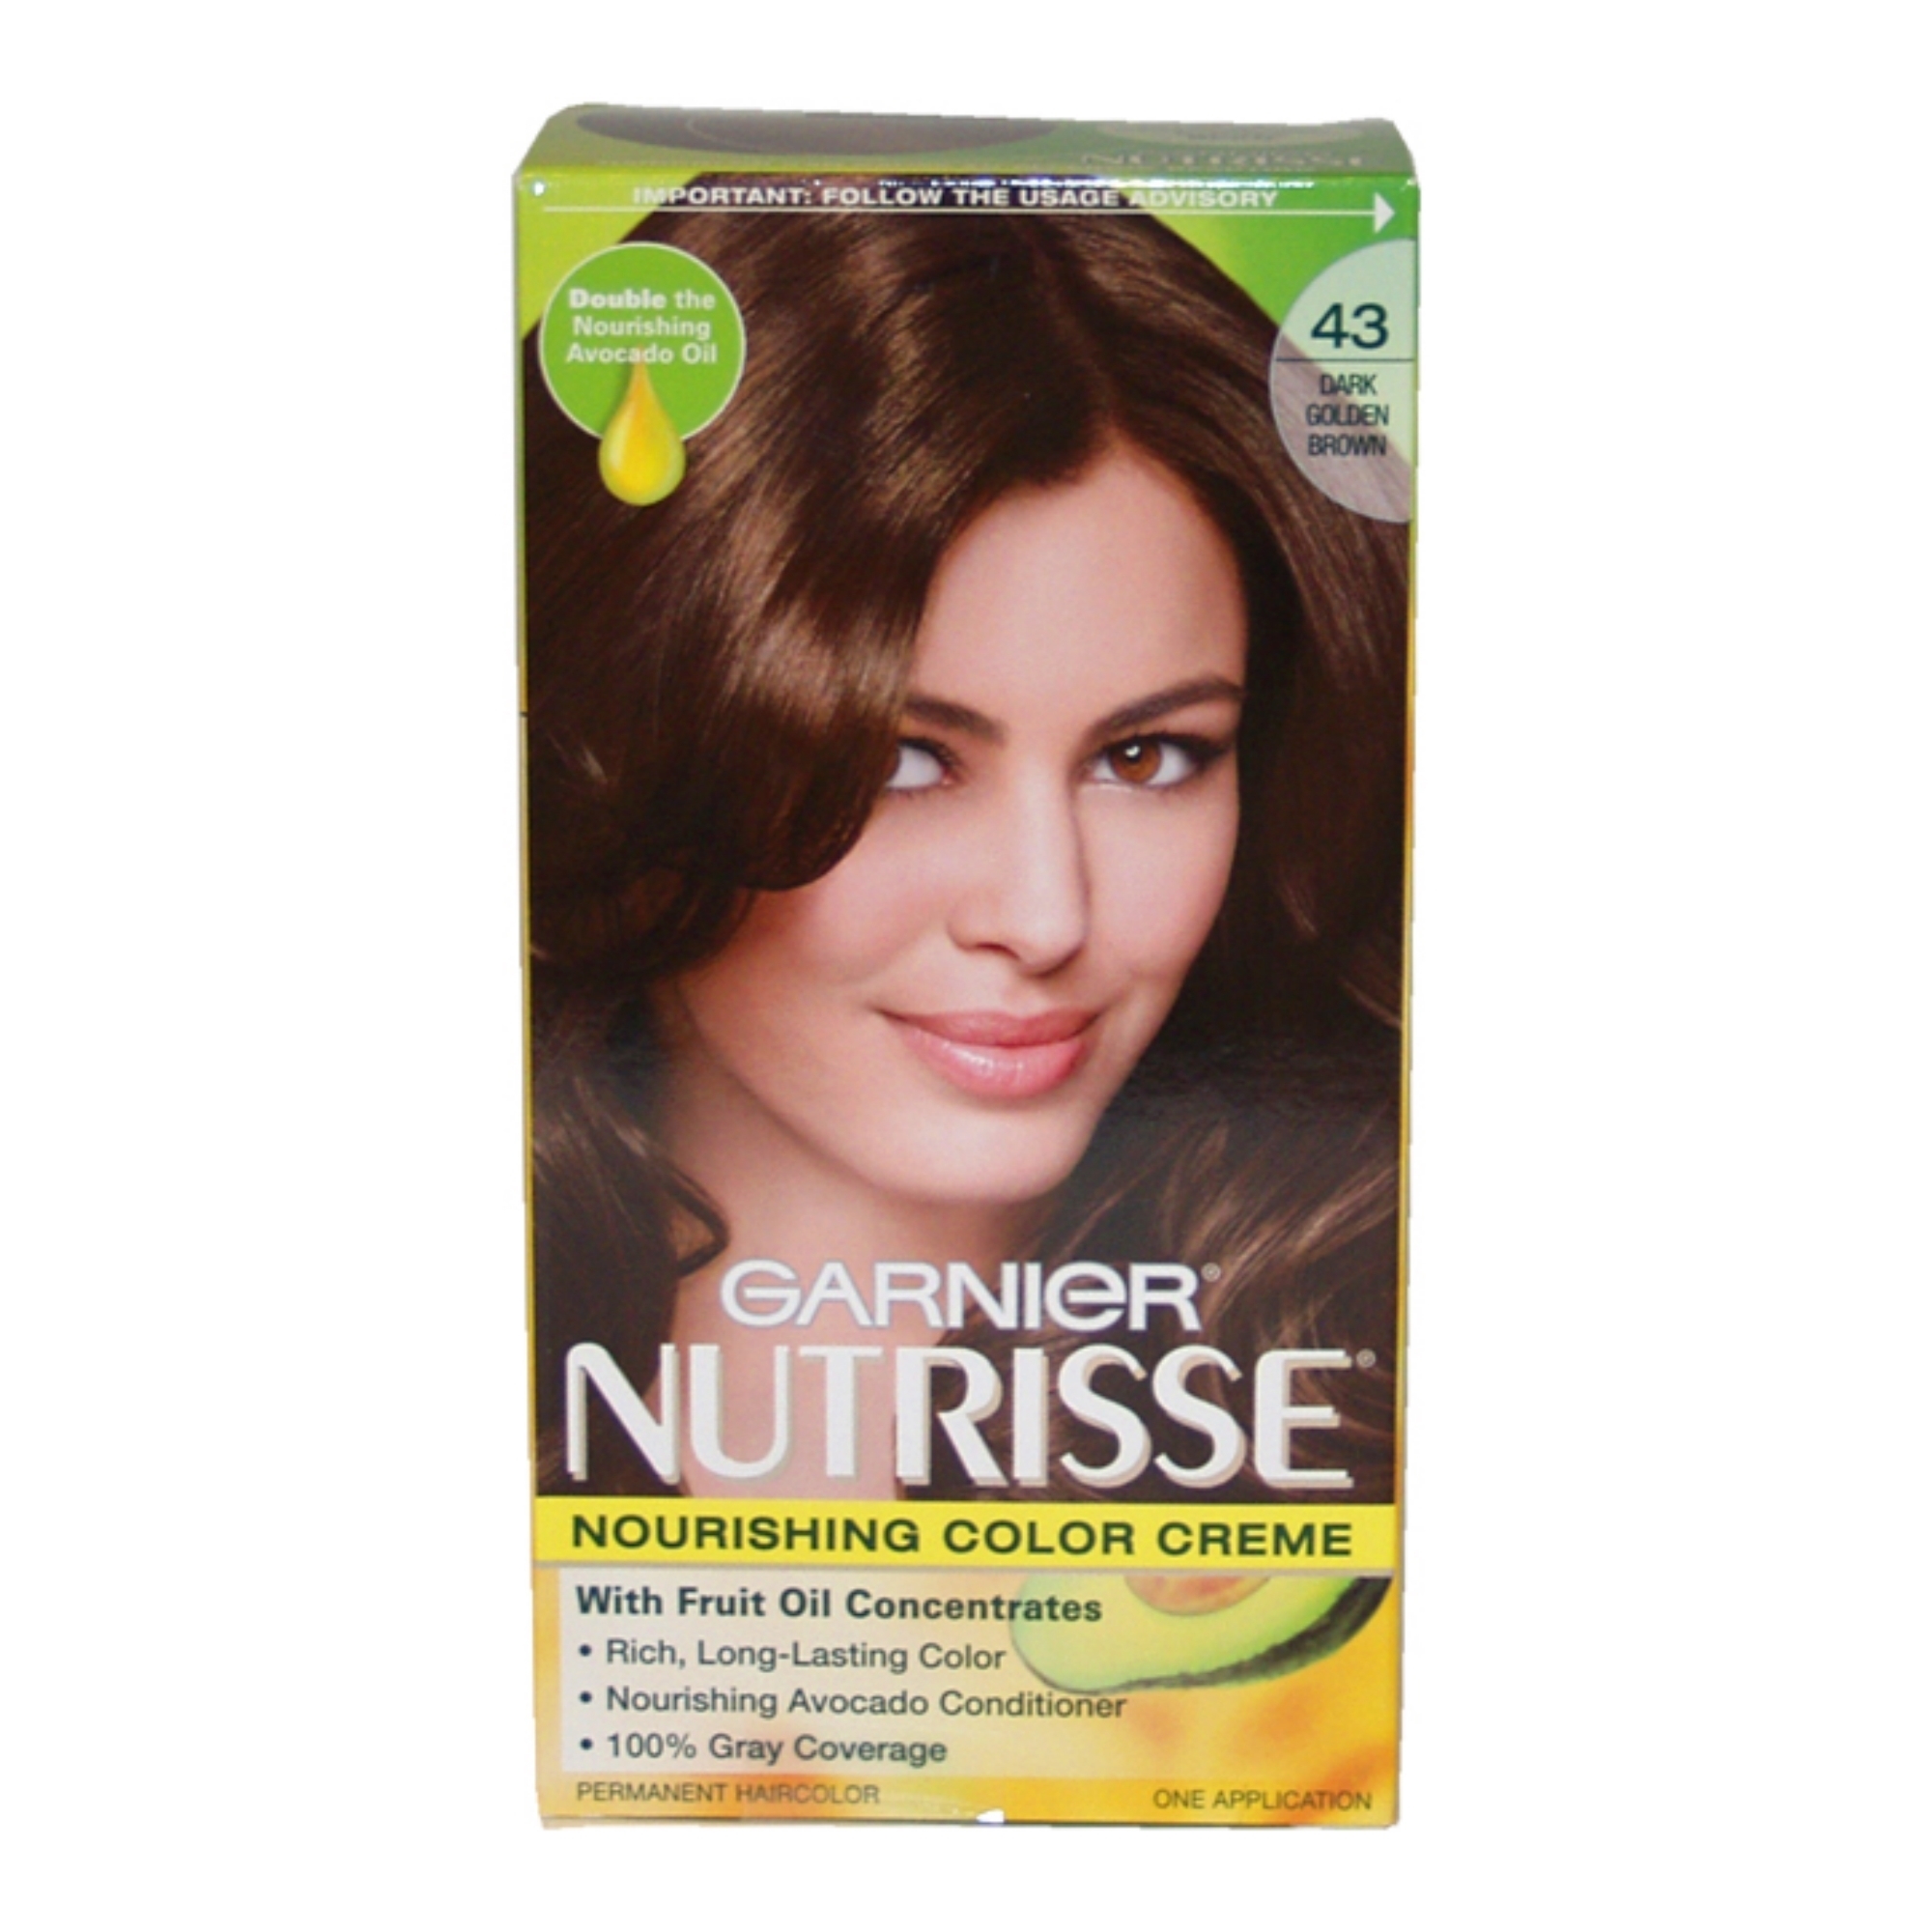 Nutrisse Nourishing Color Creme #43 Dark Golden Brown by Garnier for Unisex - 1 Application Hair Color